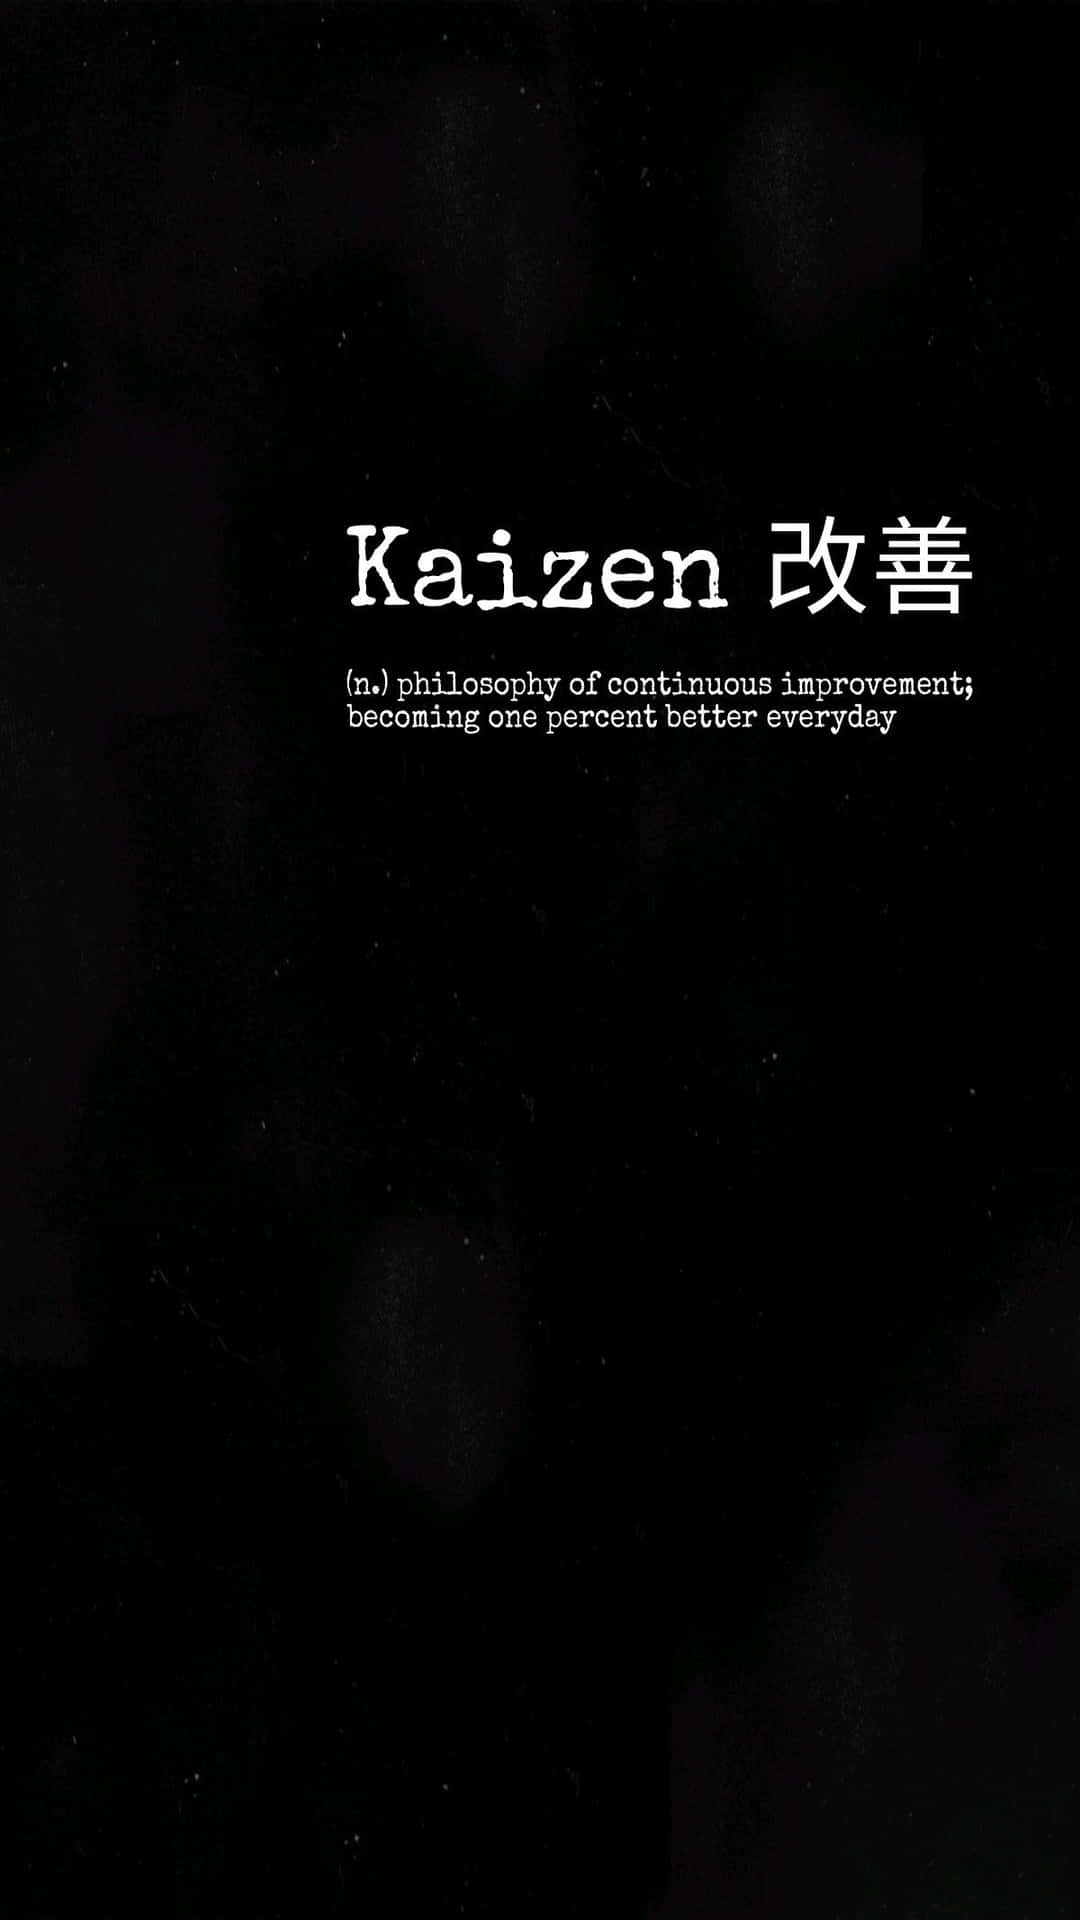 Kaizen Continuous Improvement Philosophy Wallpaper